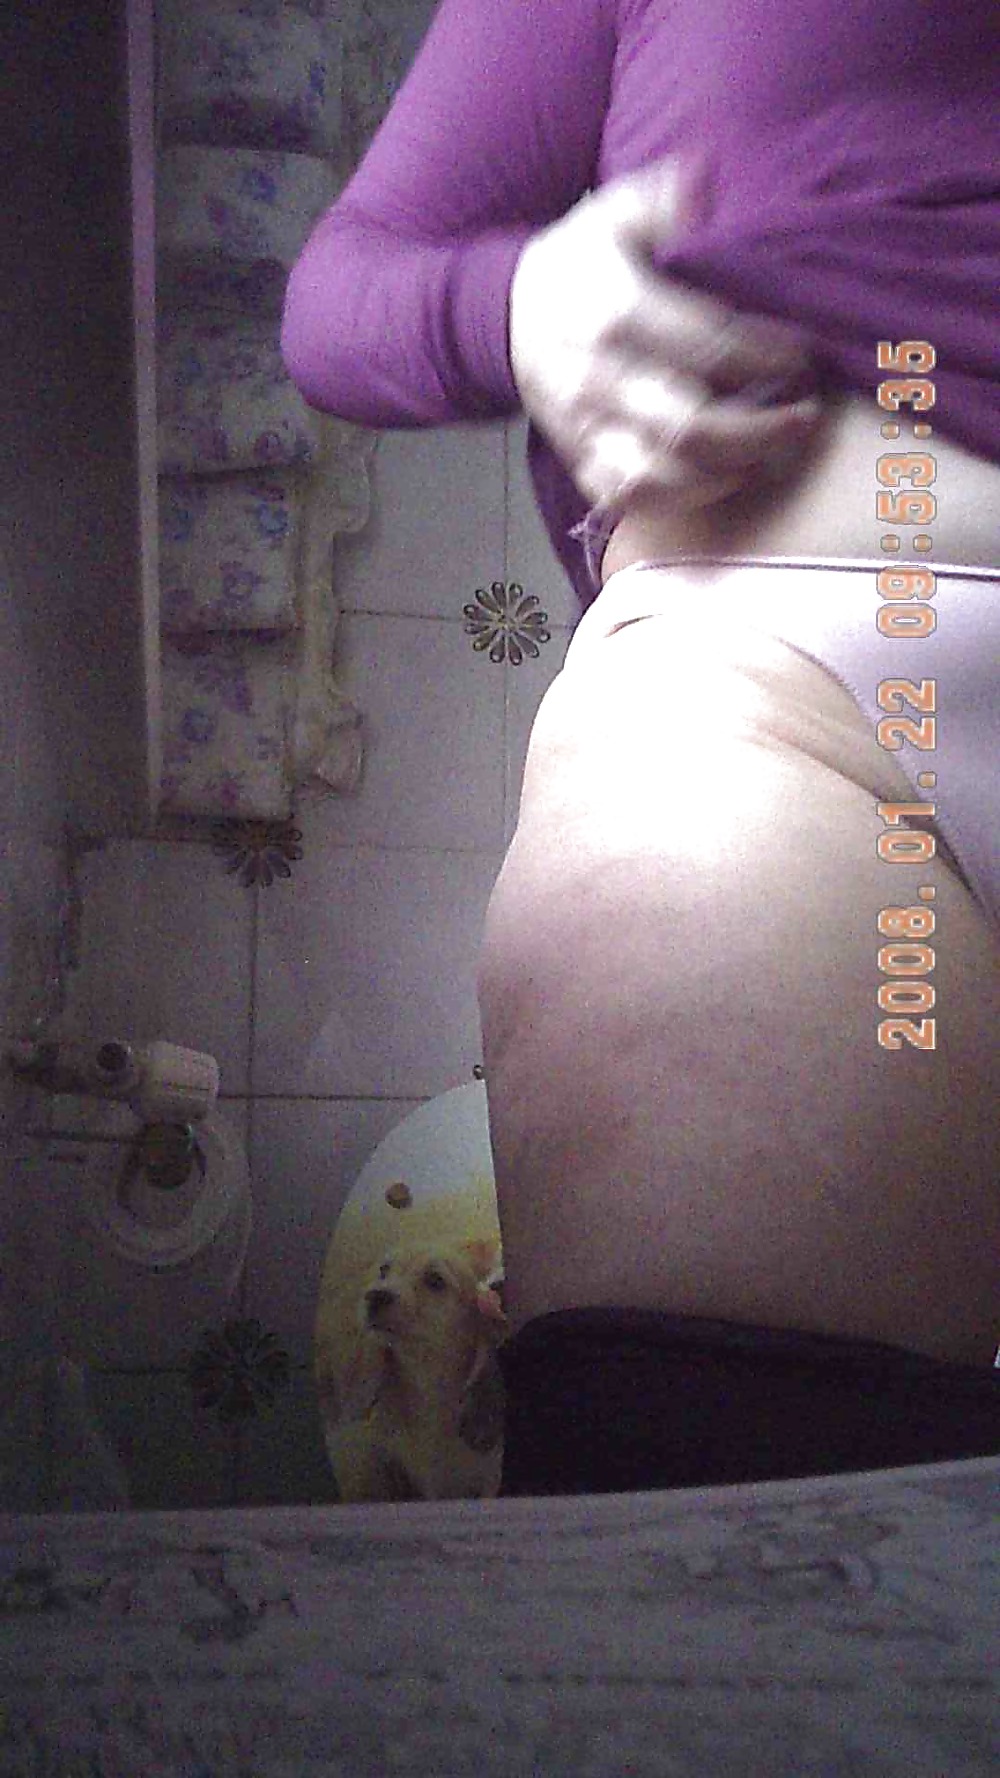 MIA SUOCERA - FOTO TRATTE DA UN VIDEO - MOTHER IN LAW #11855194